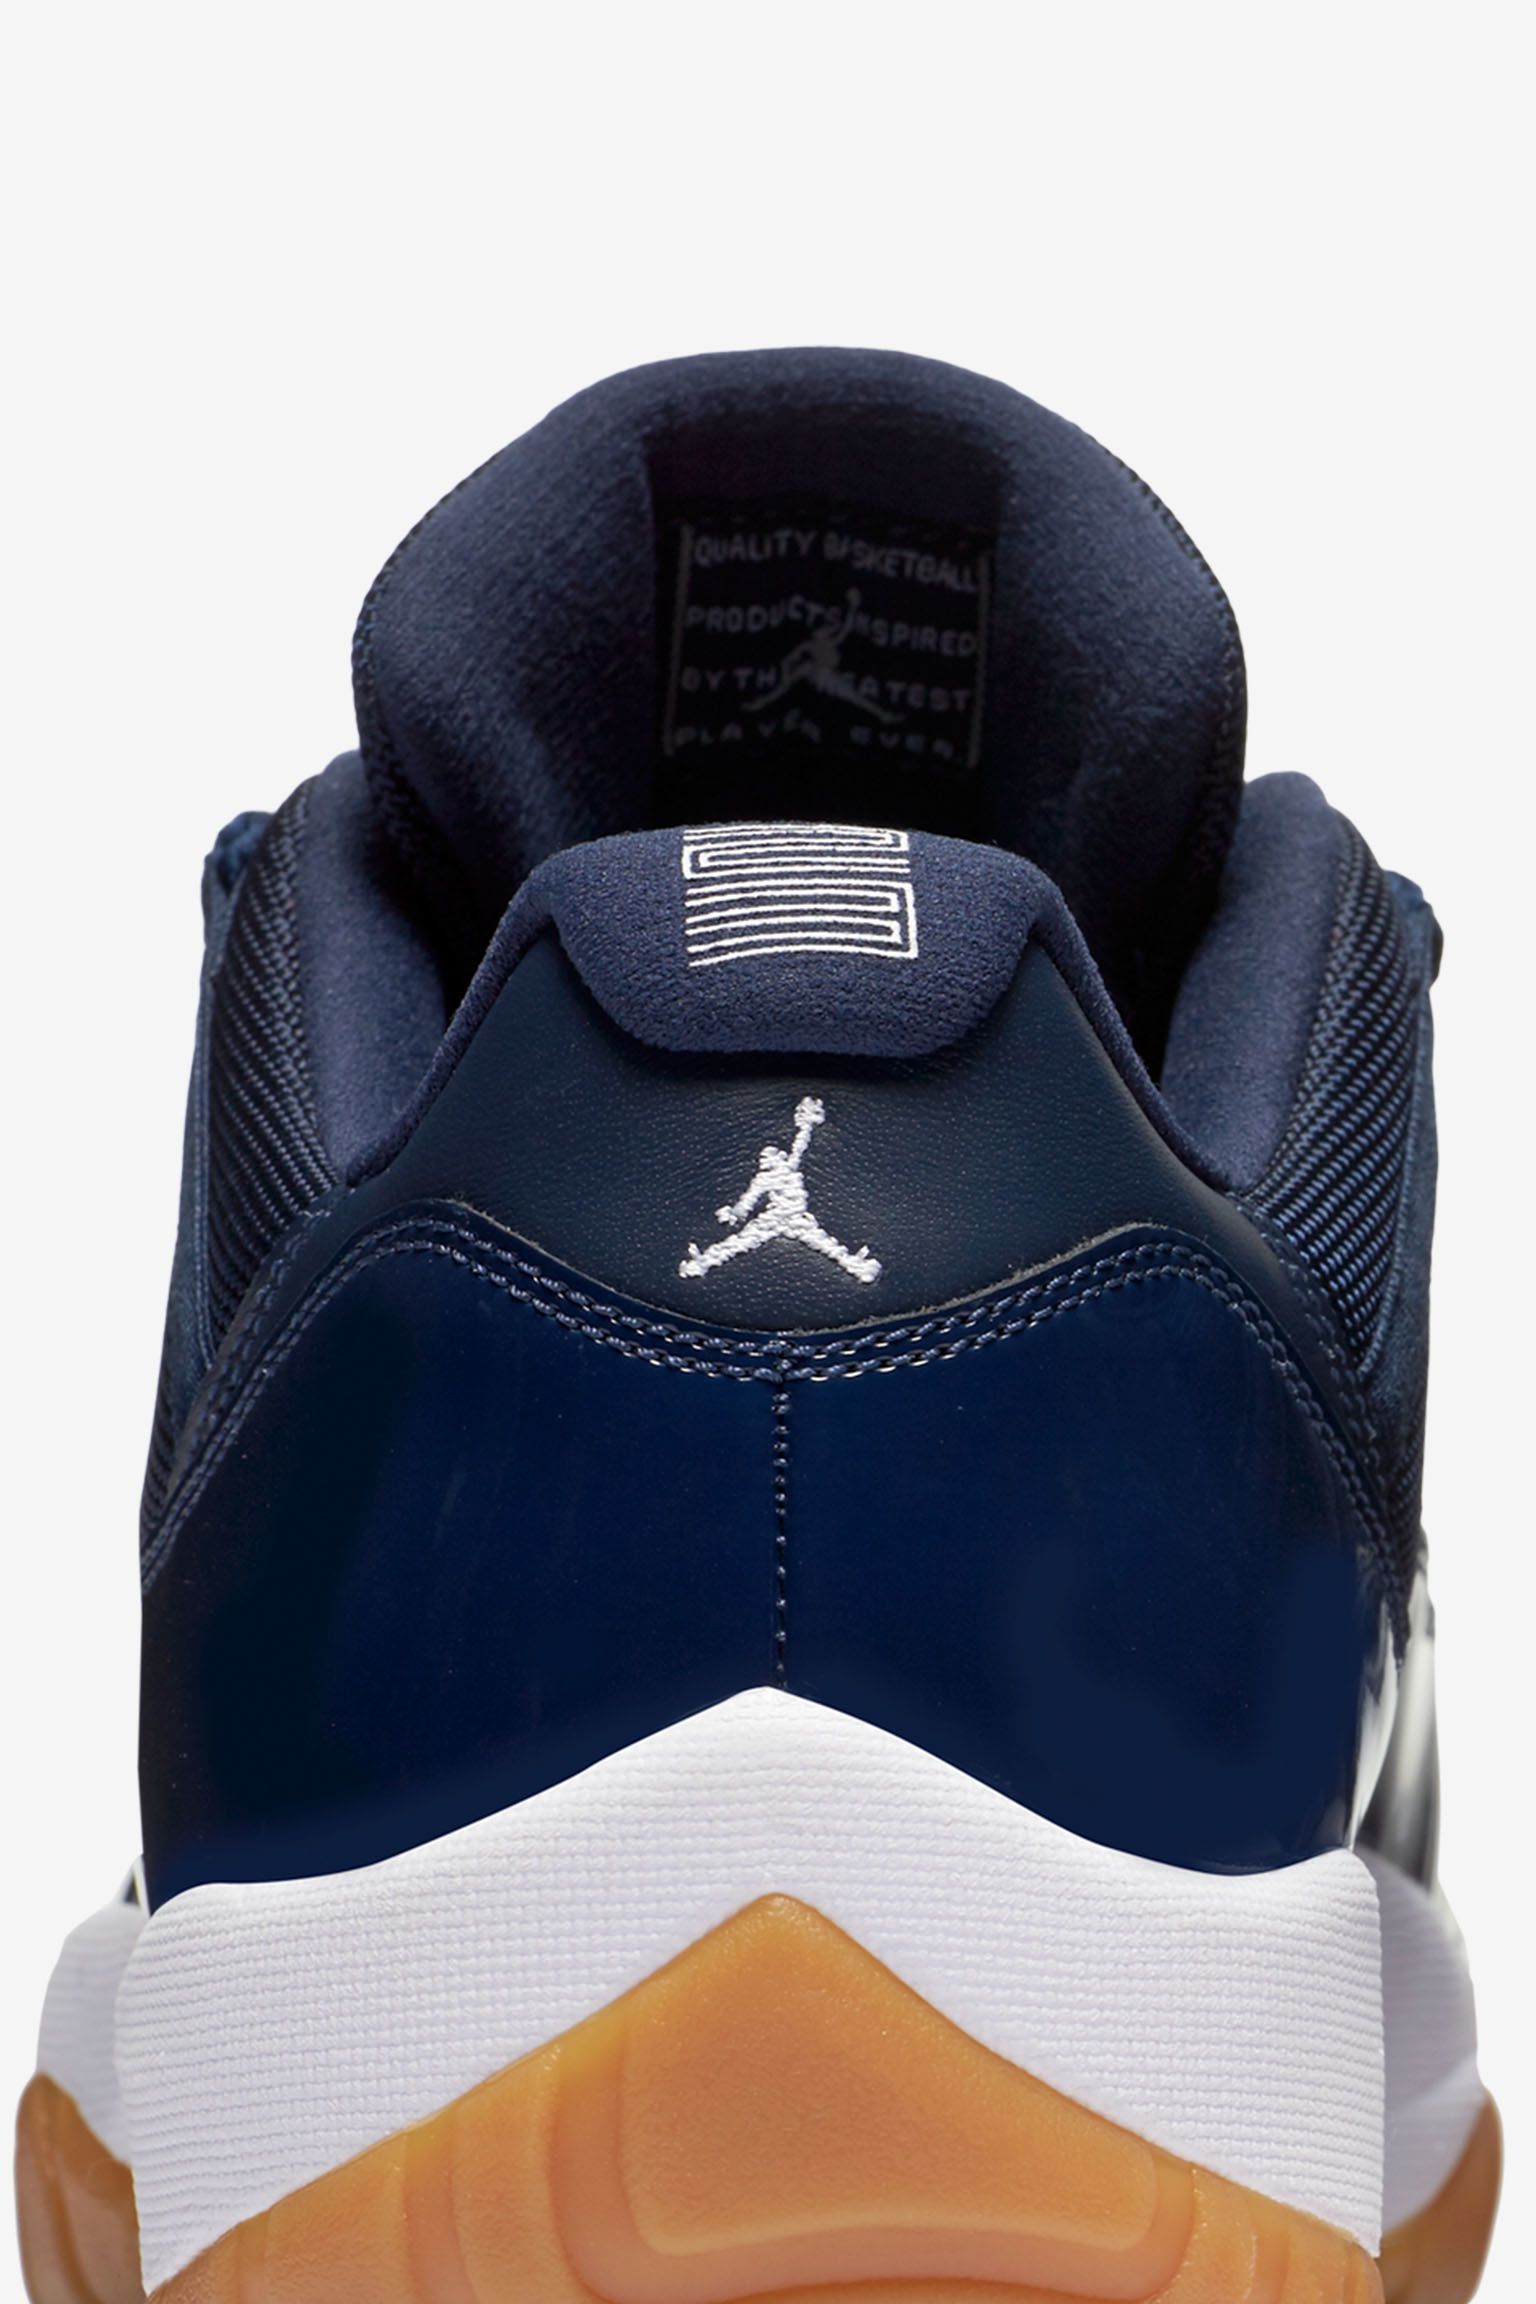 Air Jordan 11 Retro Low 'Navy Gum' Release Date. Nike SNKRS